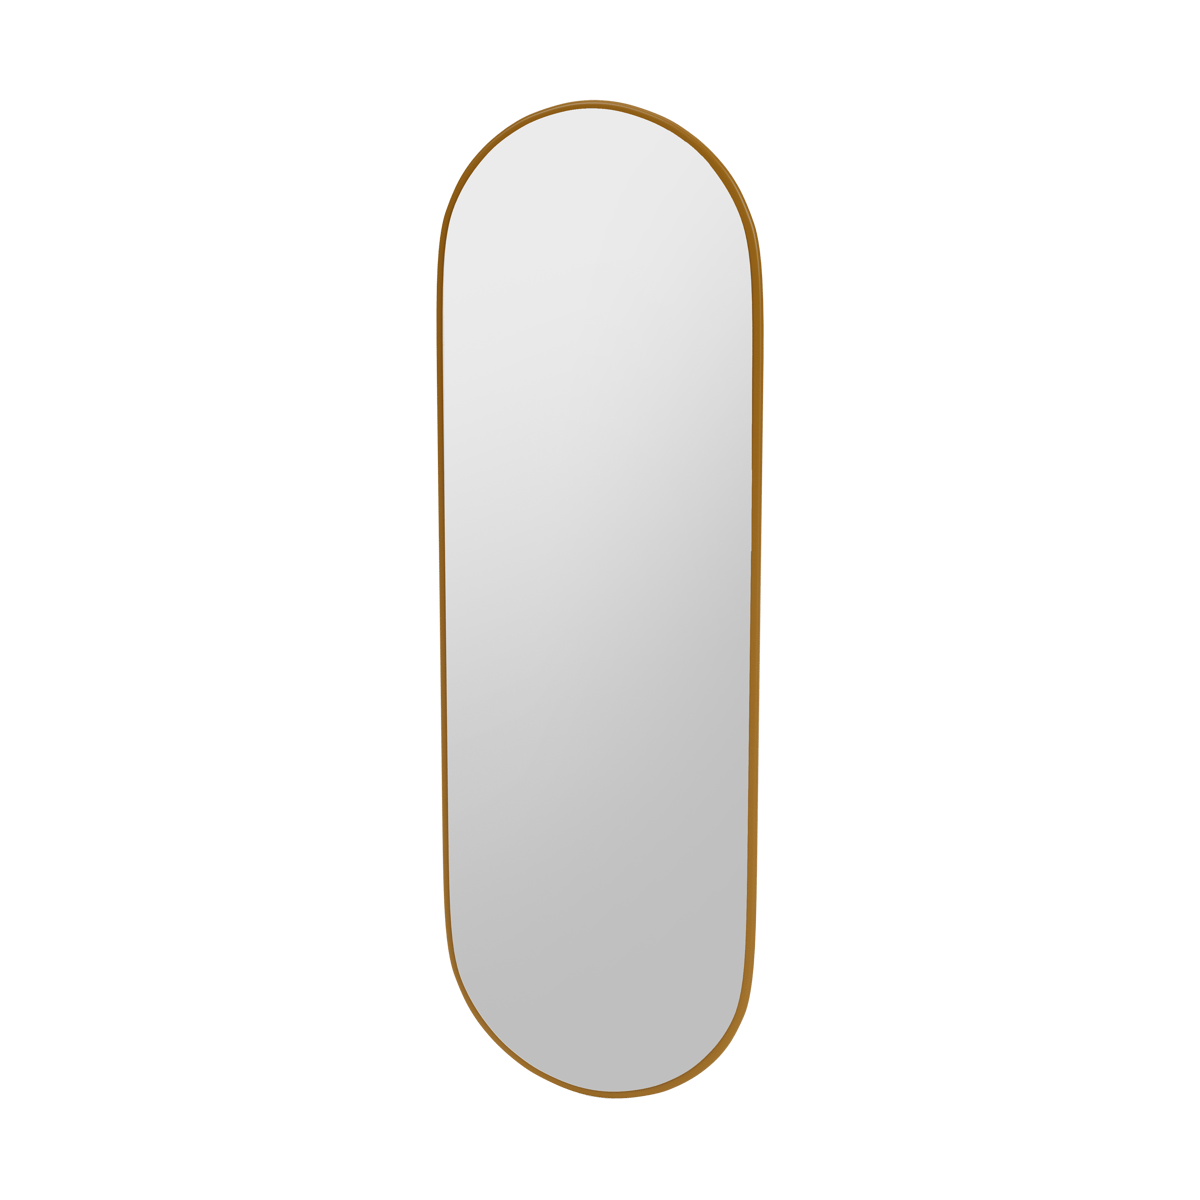 Montana FIGUUR Mirror Spiegel - SP824R Amber